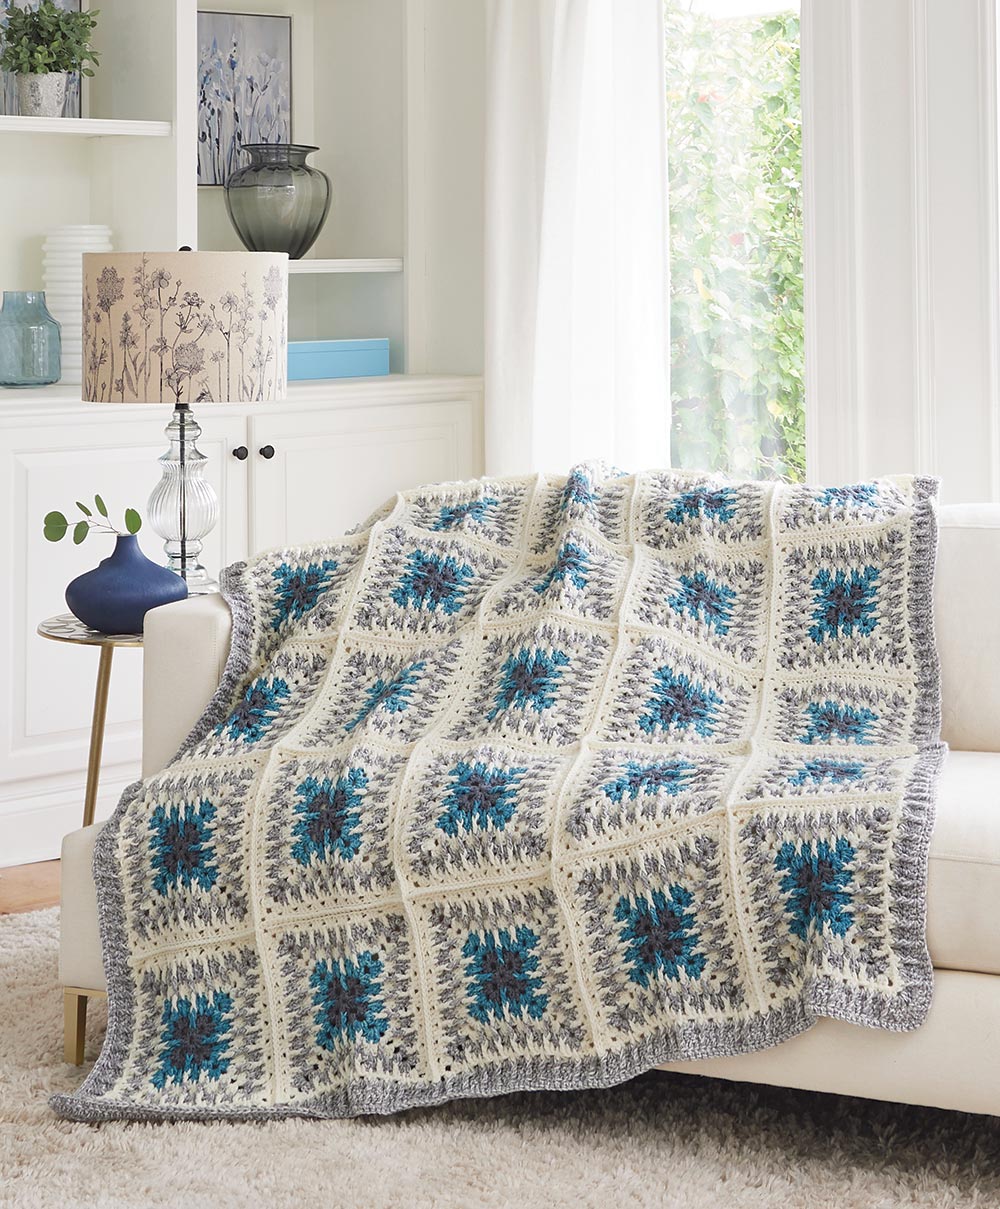 Bernat Great-Granny Crochet Blanket Crochet Kit